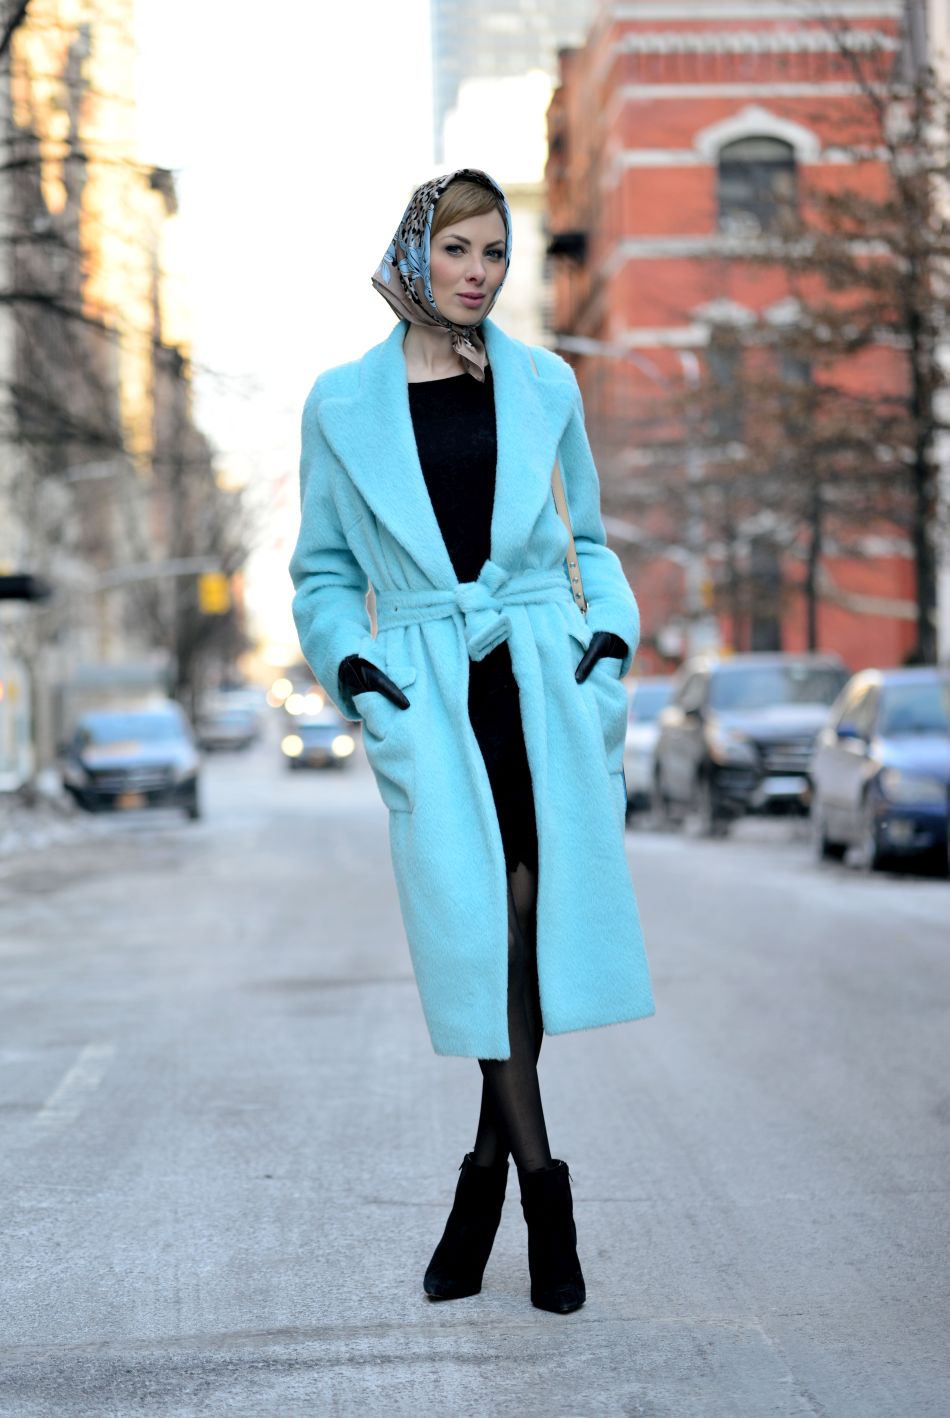 niebieski płaszcz xxl stylizacja